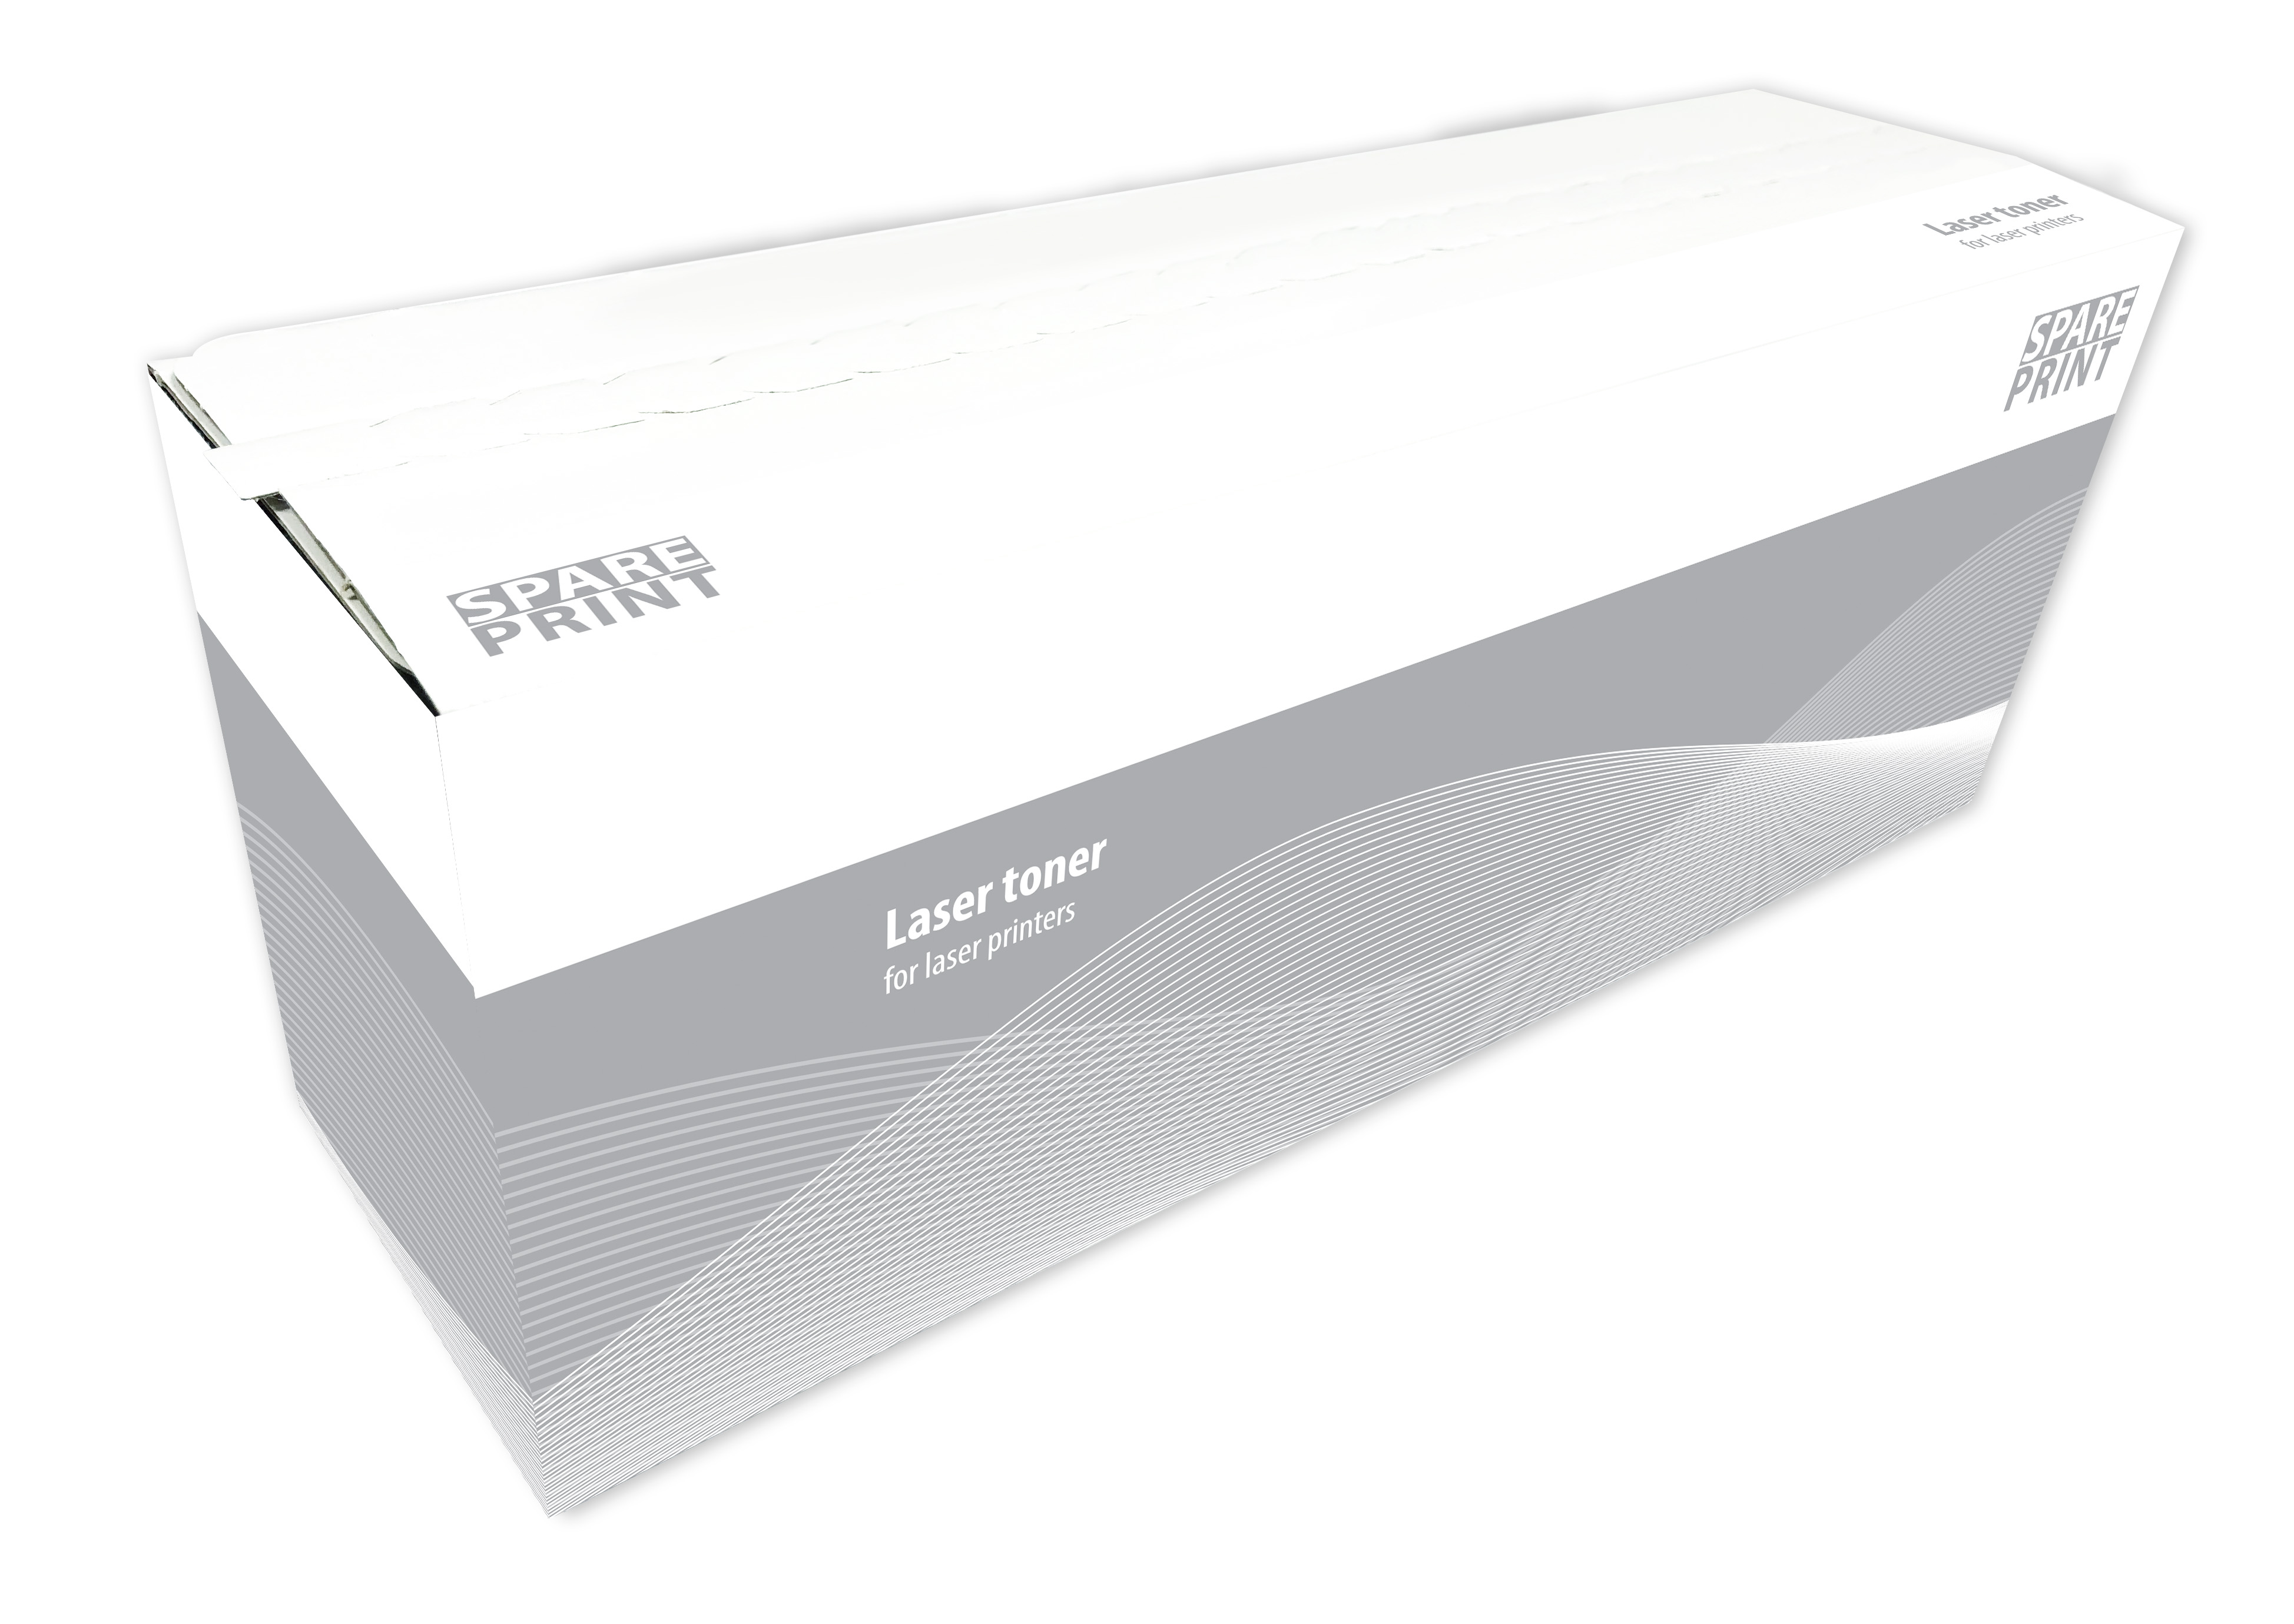 SPARE PRINT kompatibilní toner 71B20K0 Black pro tiskárny Lexmark